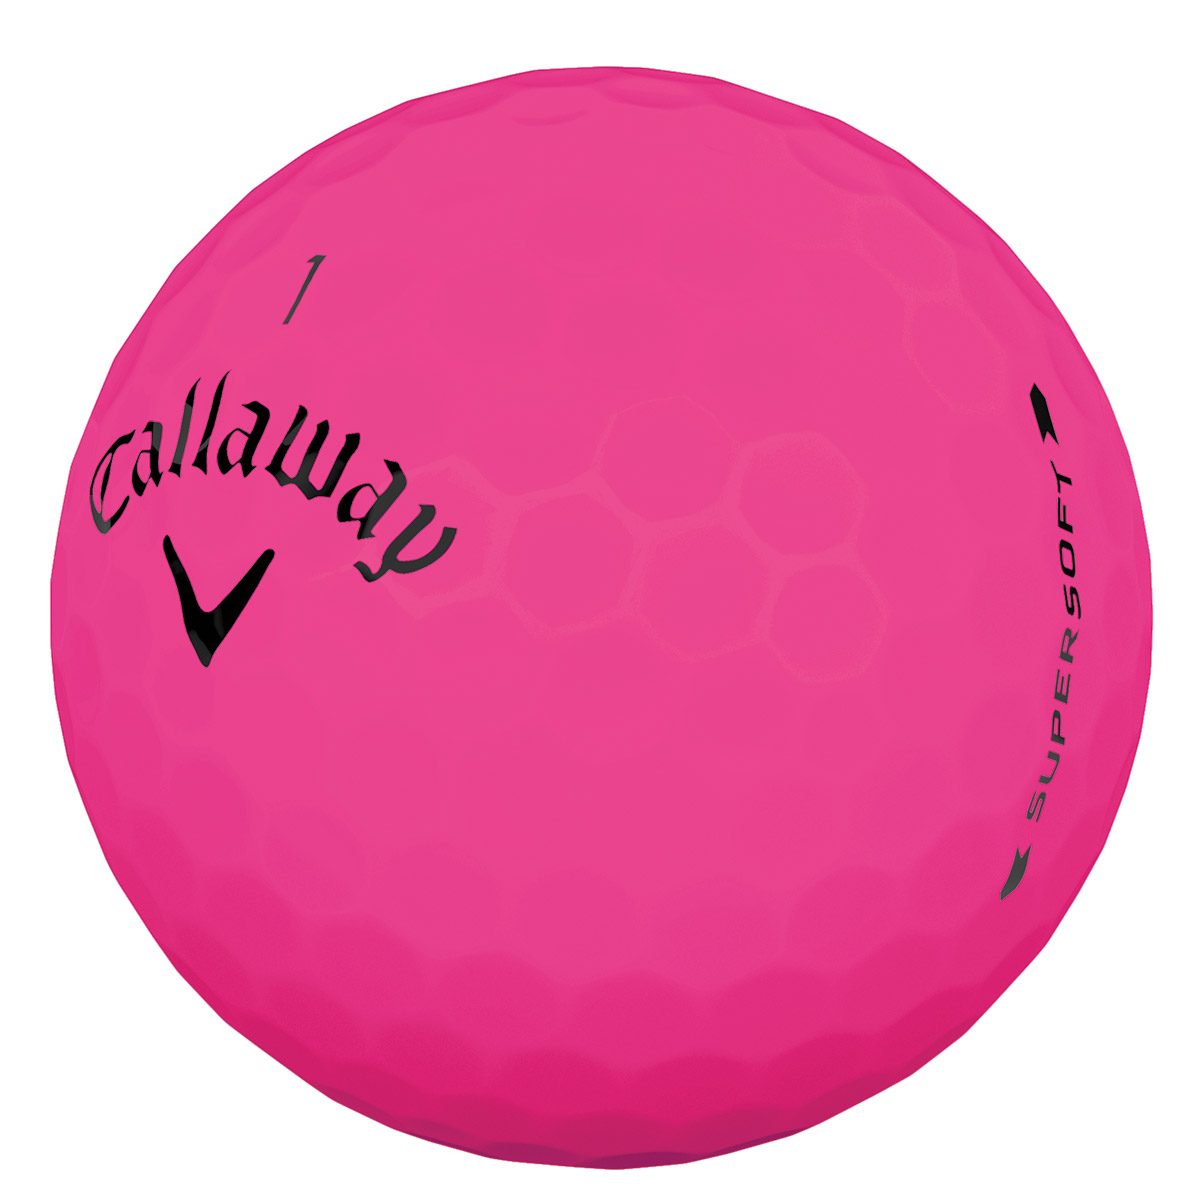 callaway superhot golf ball